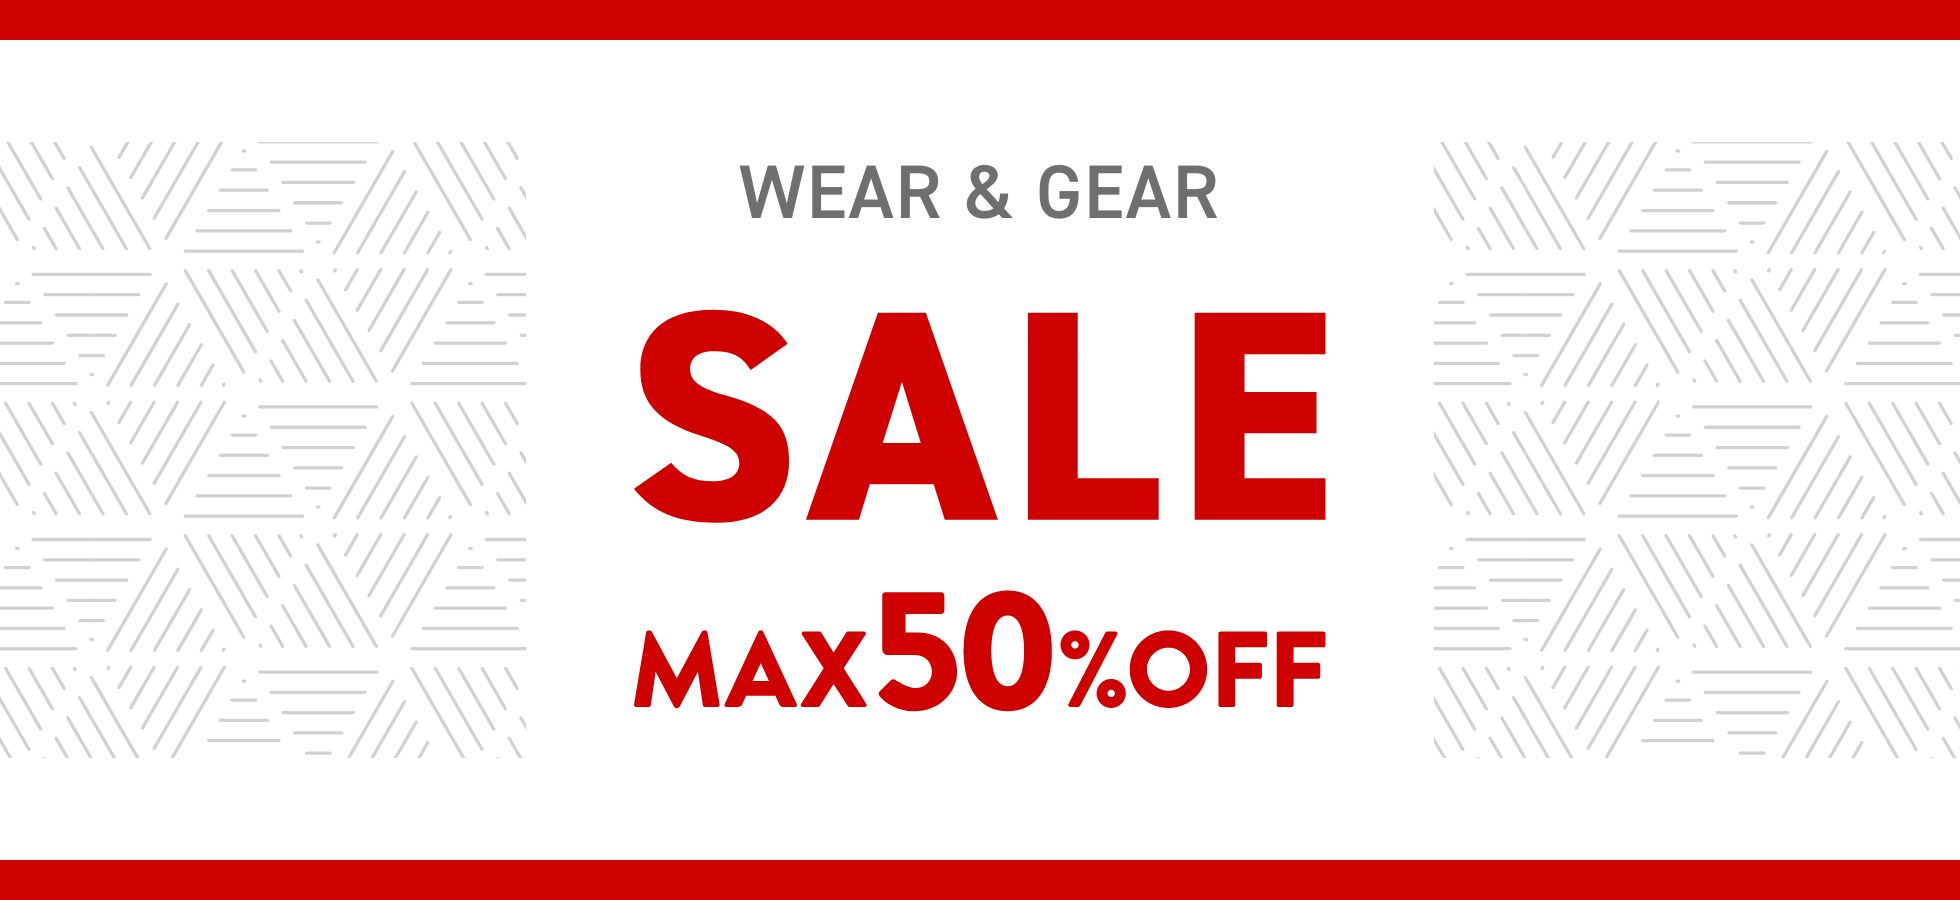 WEAR&GEAR SALE MAX50%OFF